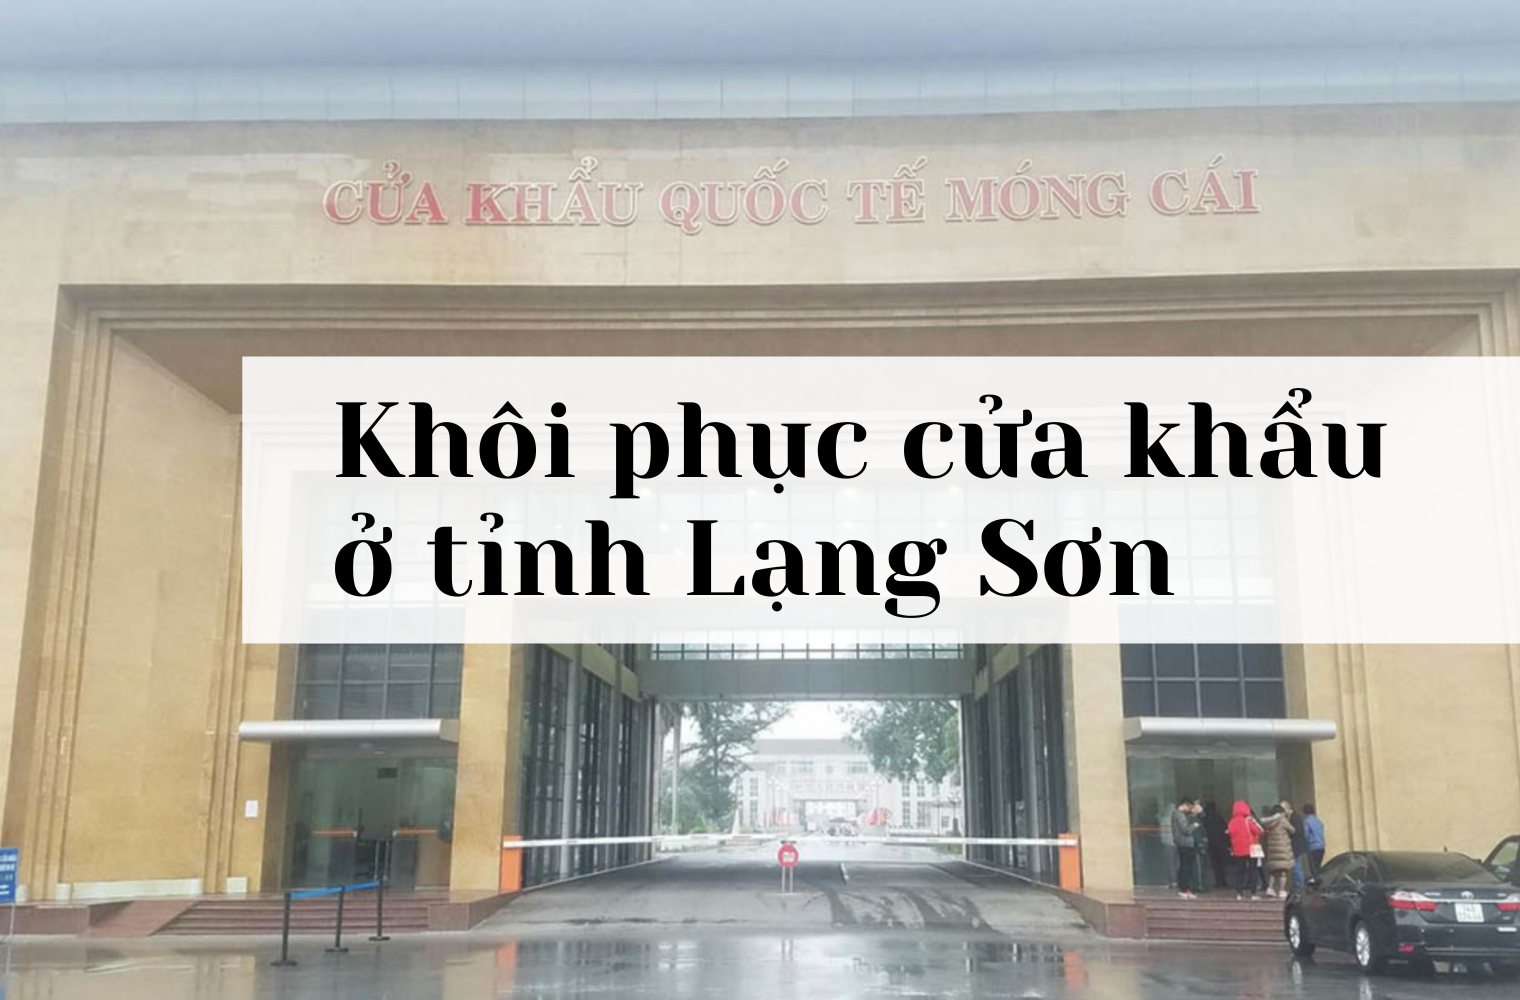 Nhiều cửa khẩu khu vực tỉnh Lạng Sơn được khôi phục thông quan